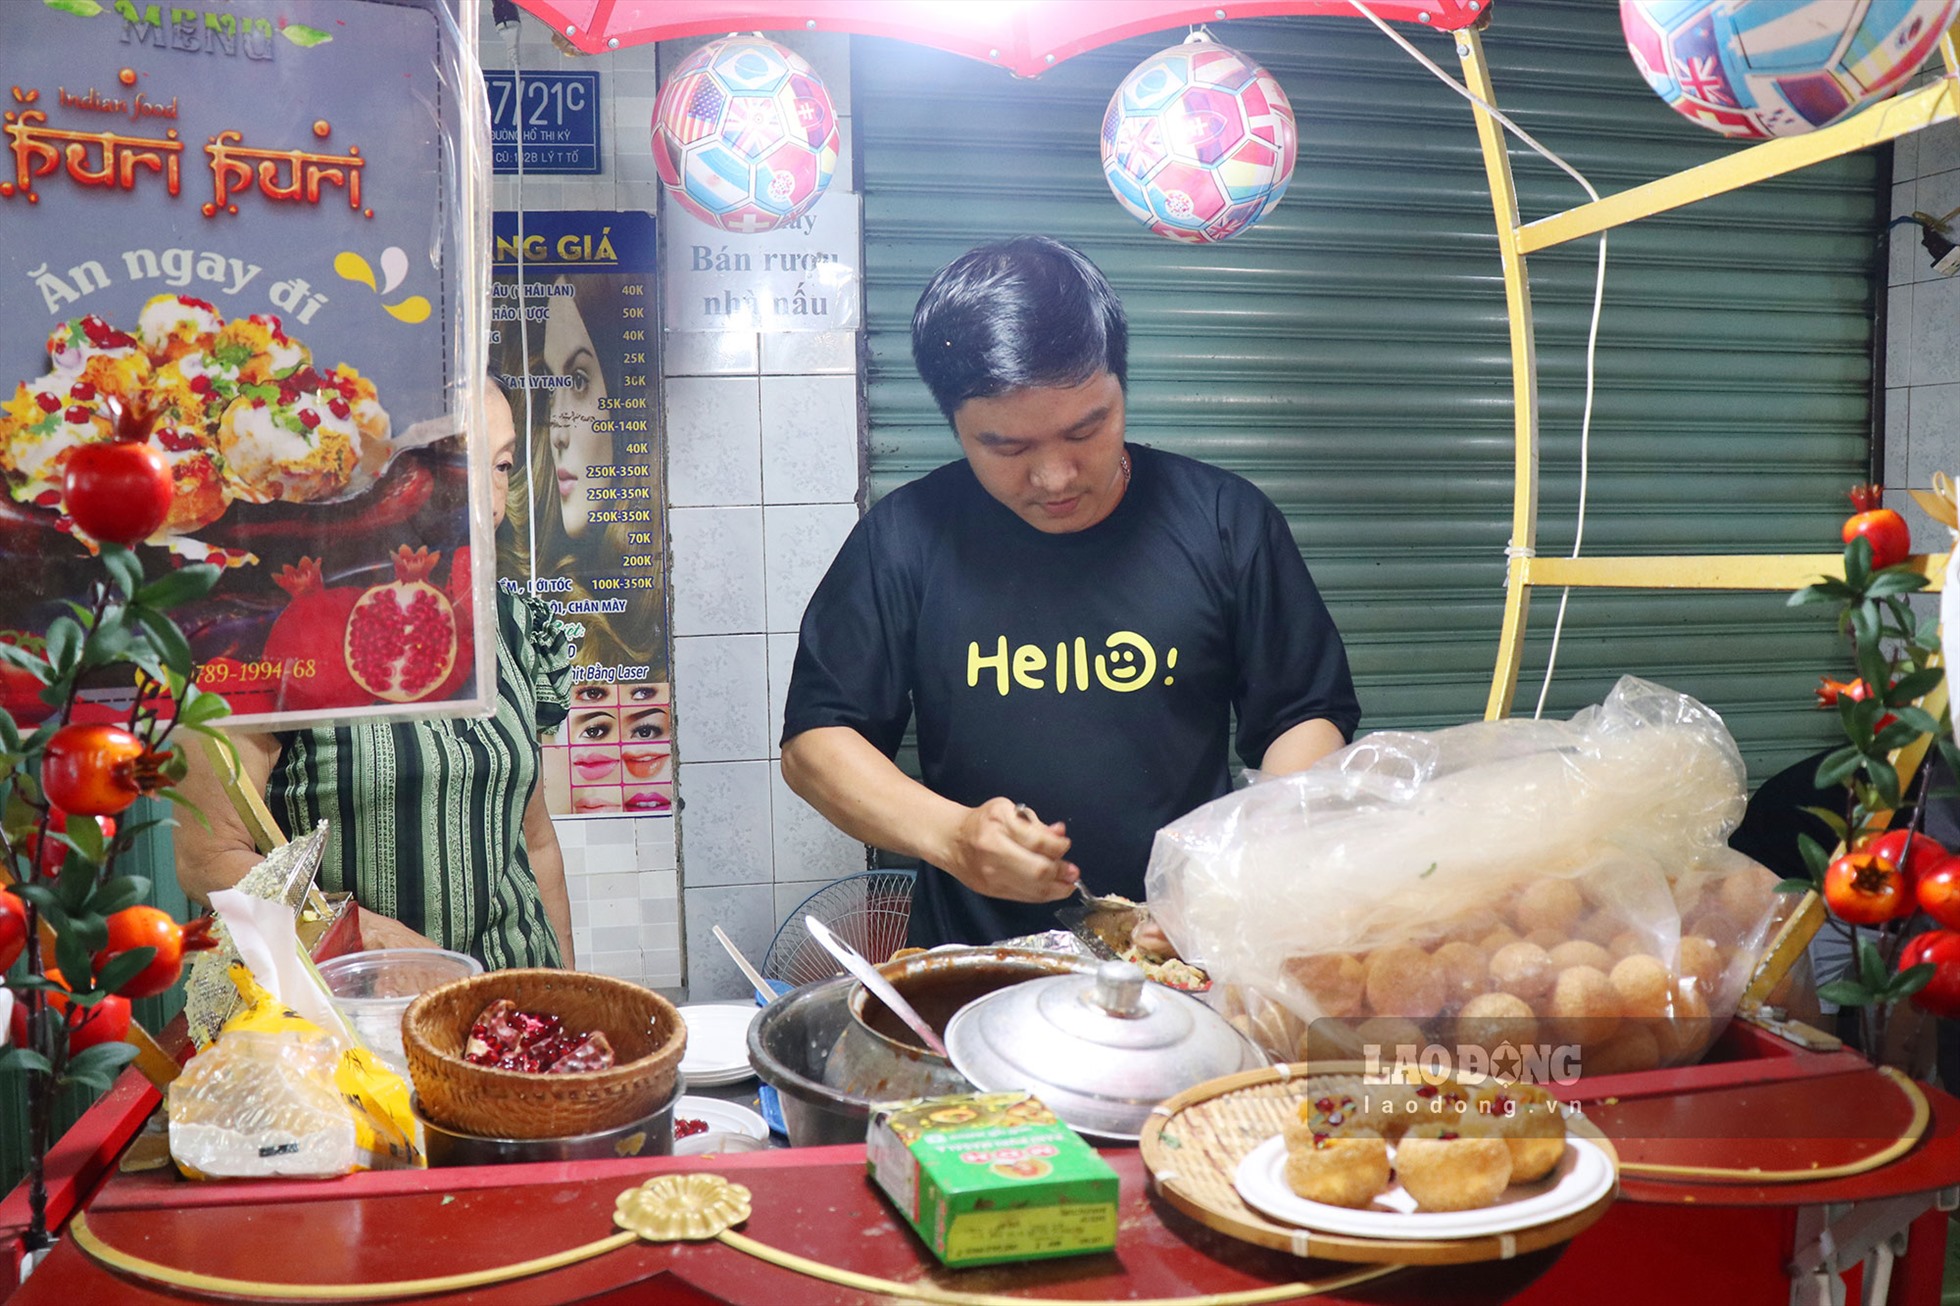 Bánh Ấn Độ pani puri gây tò mò tại chợ ăn vặt TP.HCM - Ảnh 1.